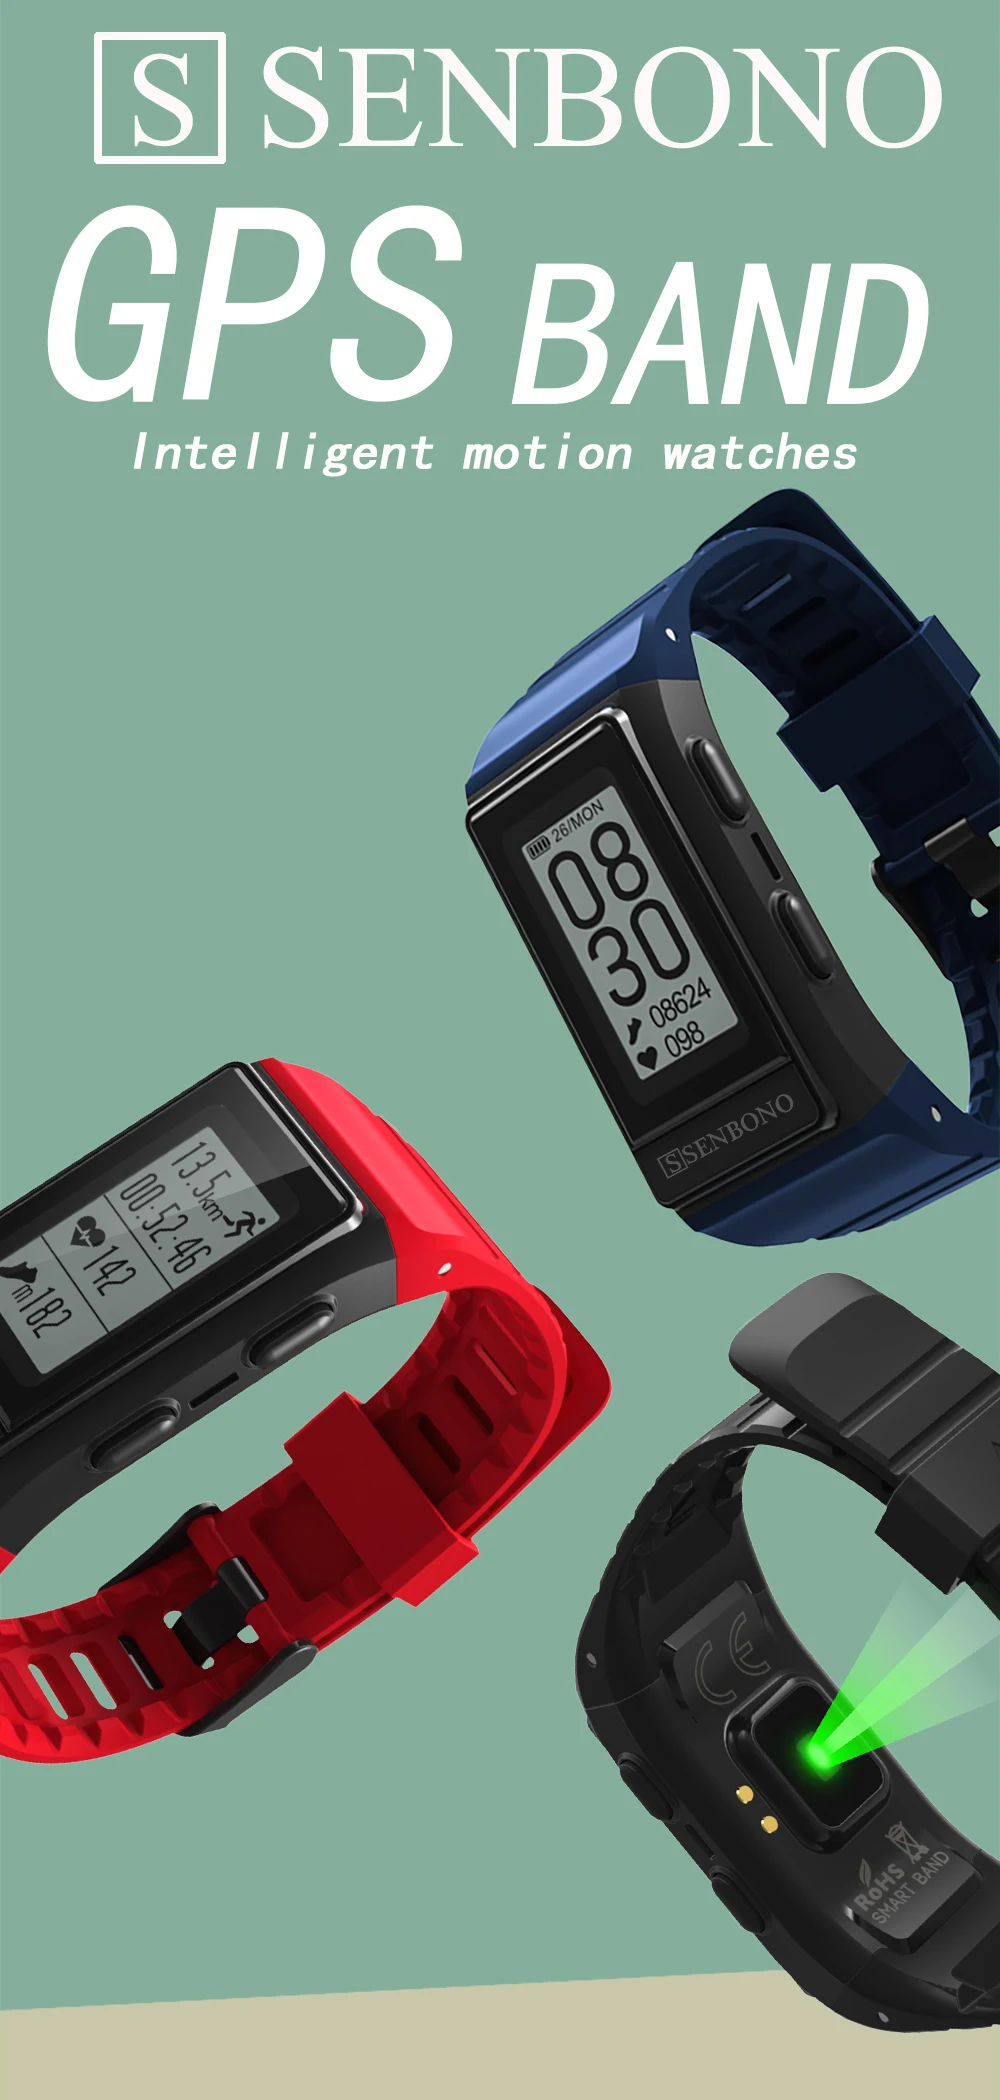 SENBONO смарт-браслет IP68 Водонепроницаемый gps спортивные часы фитнес-браслет трекер активности высота пульсометр браслет